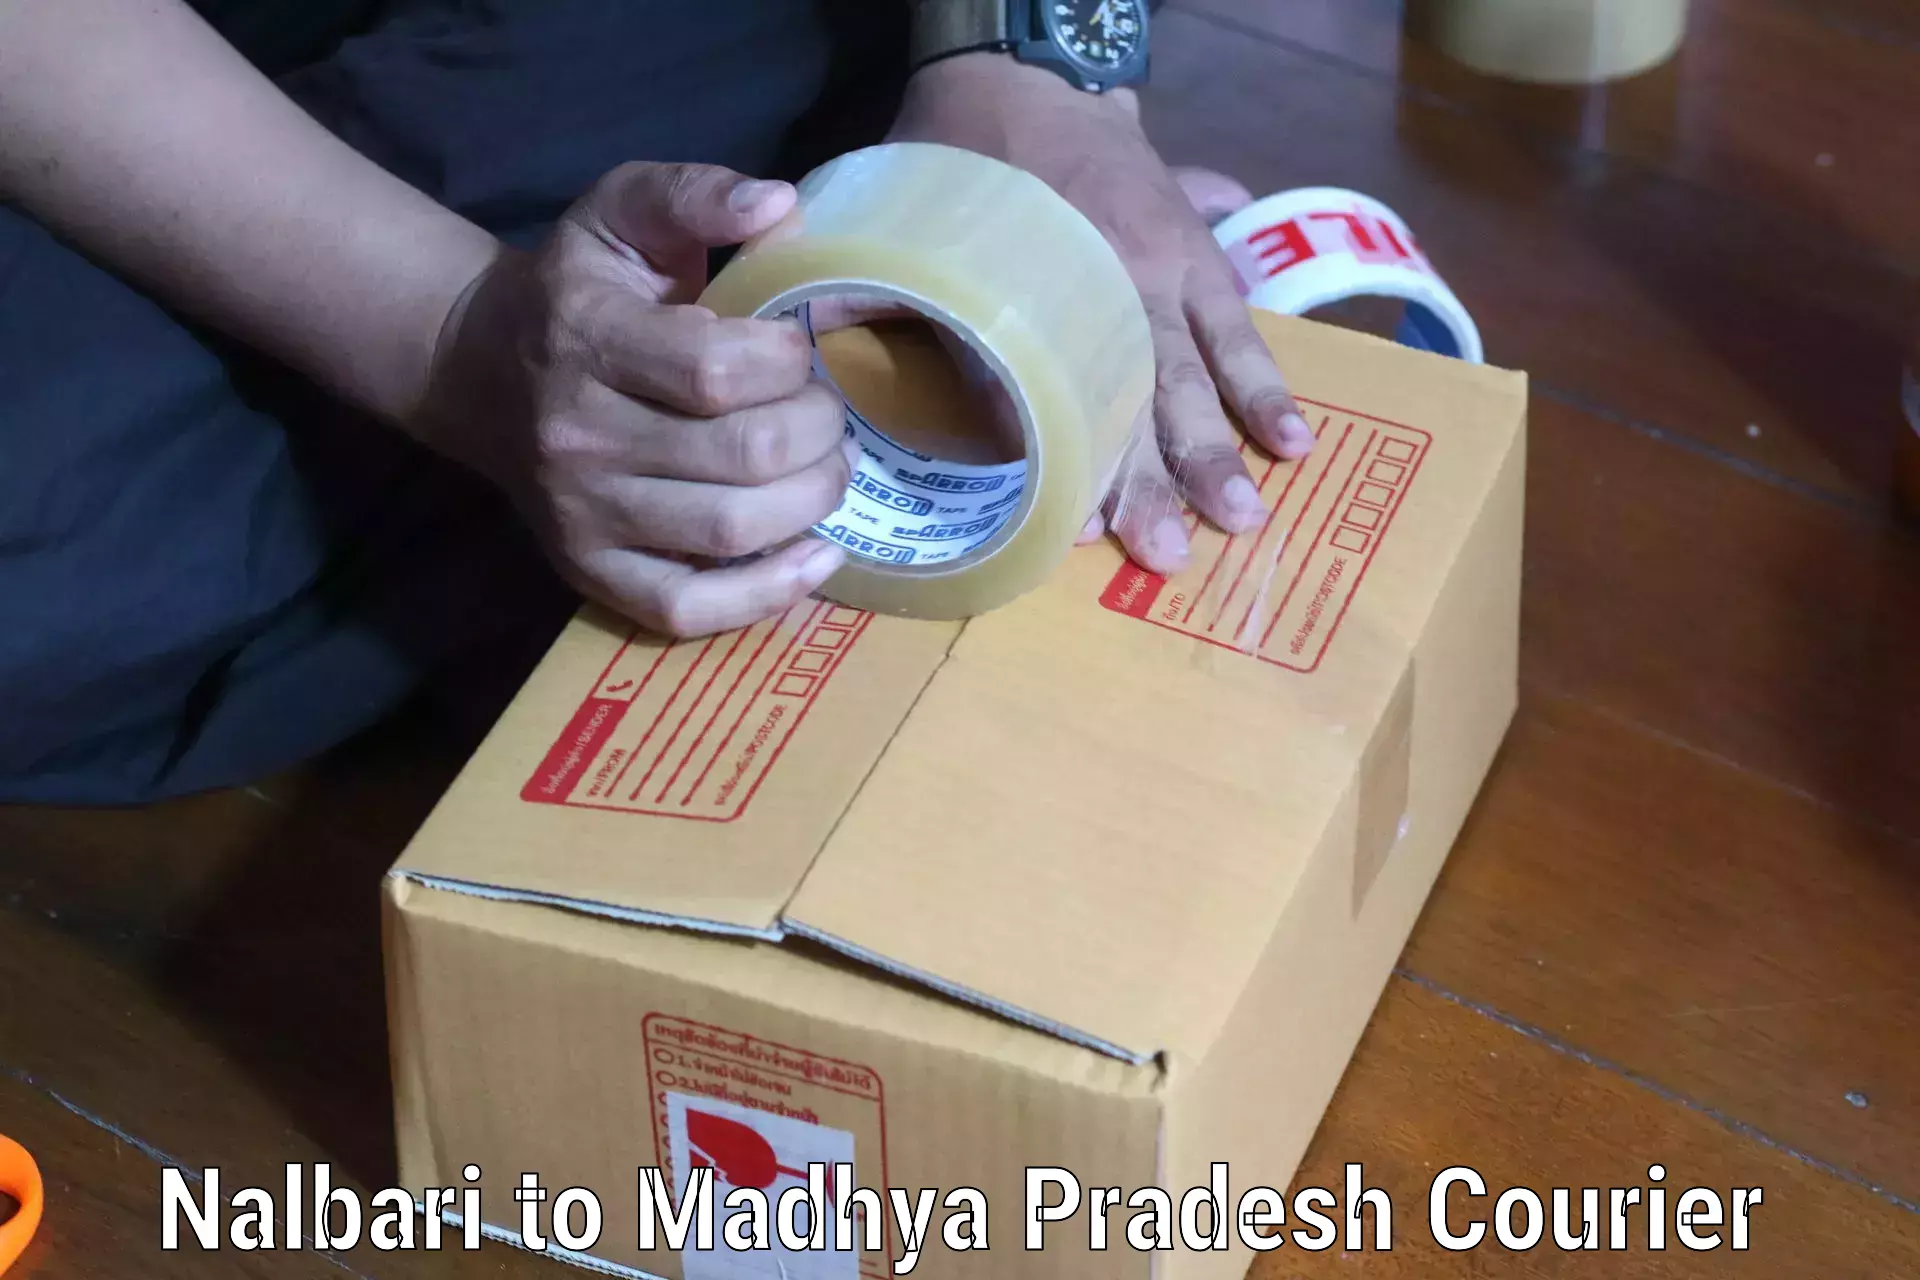 Courier service partnerships Nalbari to Madhya Pradesh